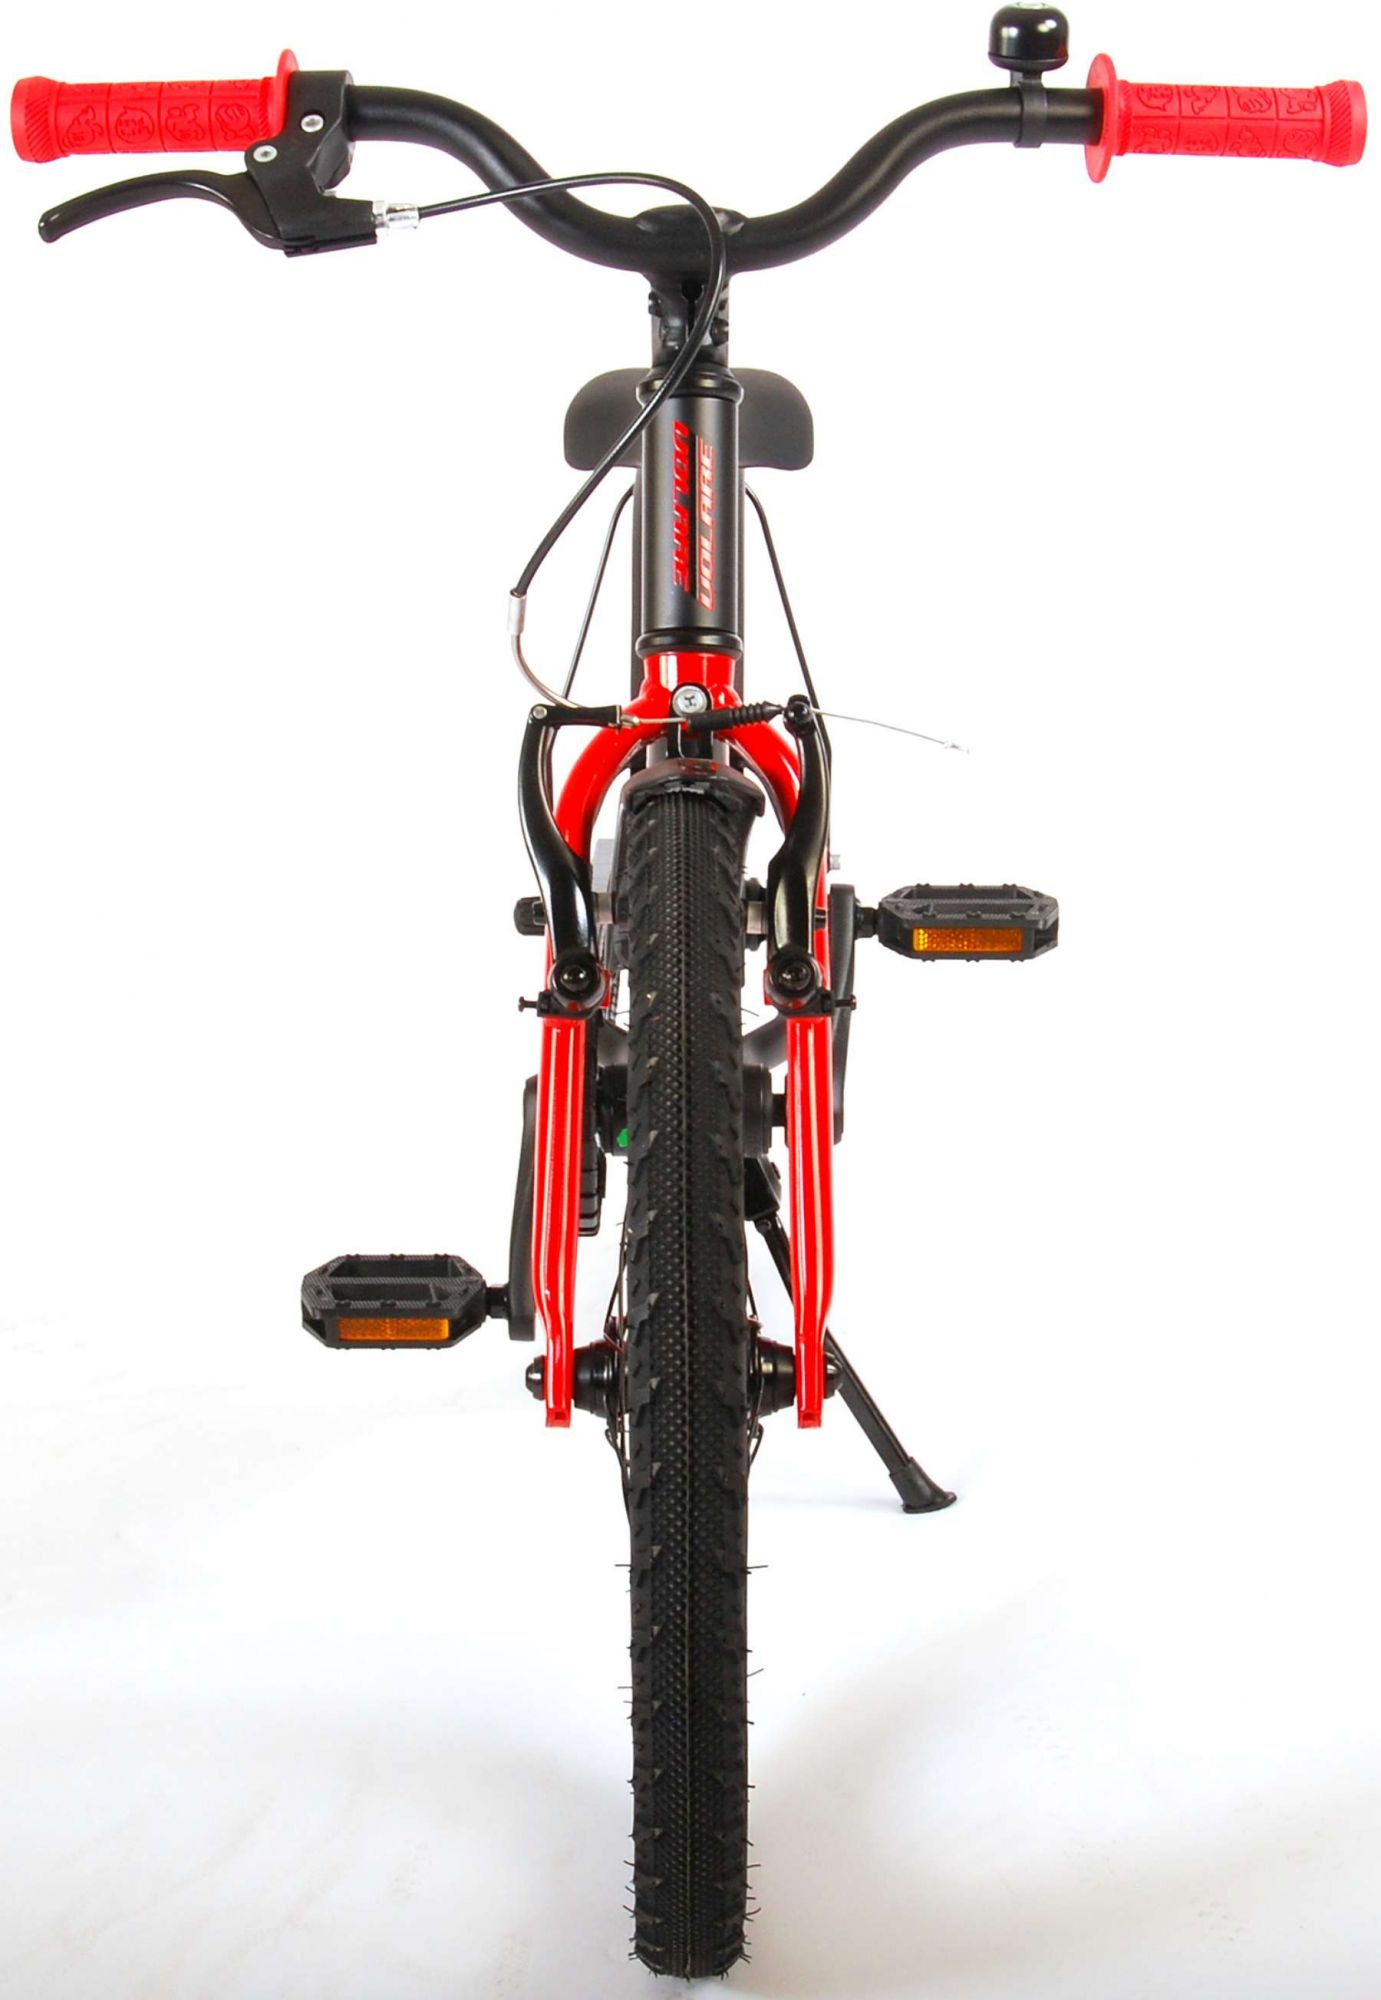 Kinderfahrrad Blaster Fahrrad für Jungen 18 Zoll Kinderrad Schwarz Rot